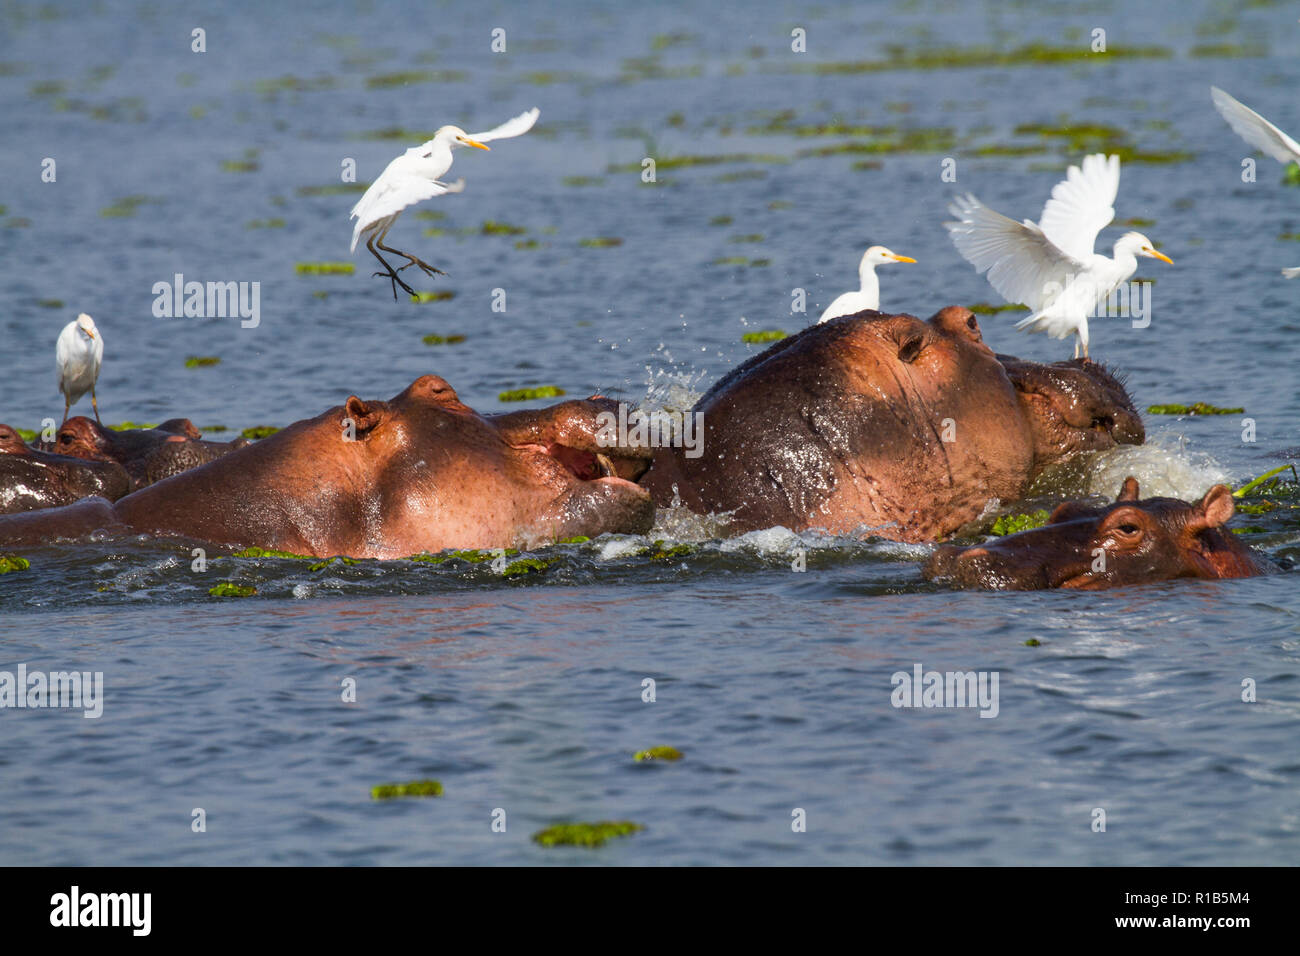 Un groupe d'Hippopotame (Hippopotamus amphibius) dans le Nil, garde-boeufs (Bubulcus ibis) Comité permanent sur les hippopotames. Banque D'Images